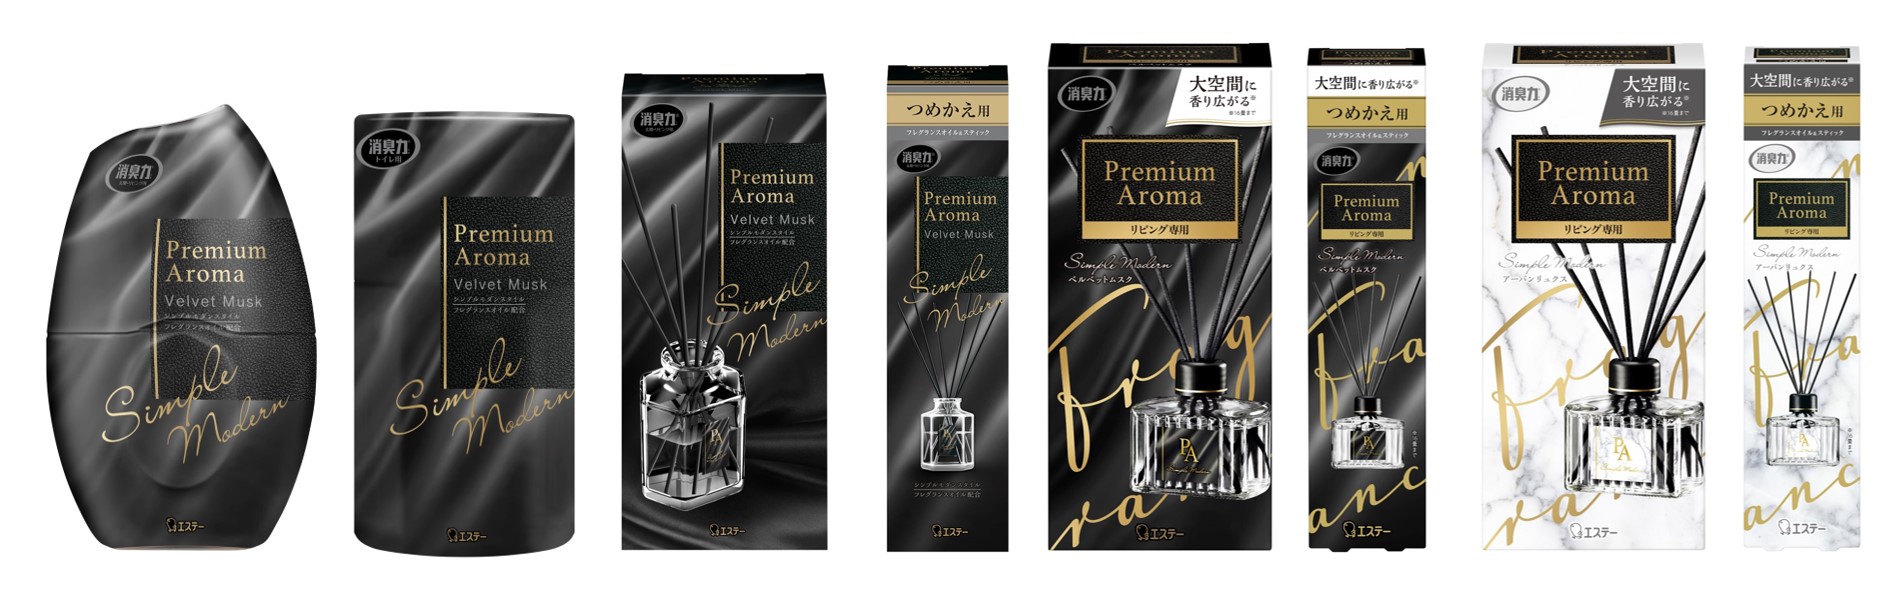 消臭力 Premium Aroma シリーズから ベルベットムスク の香りと 大容量の 消臭力 Premium Aroma Stick リビング専用 を新発売